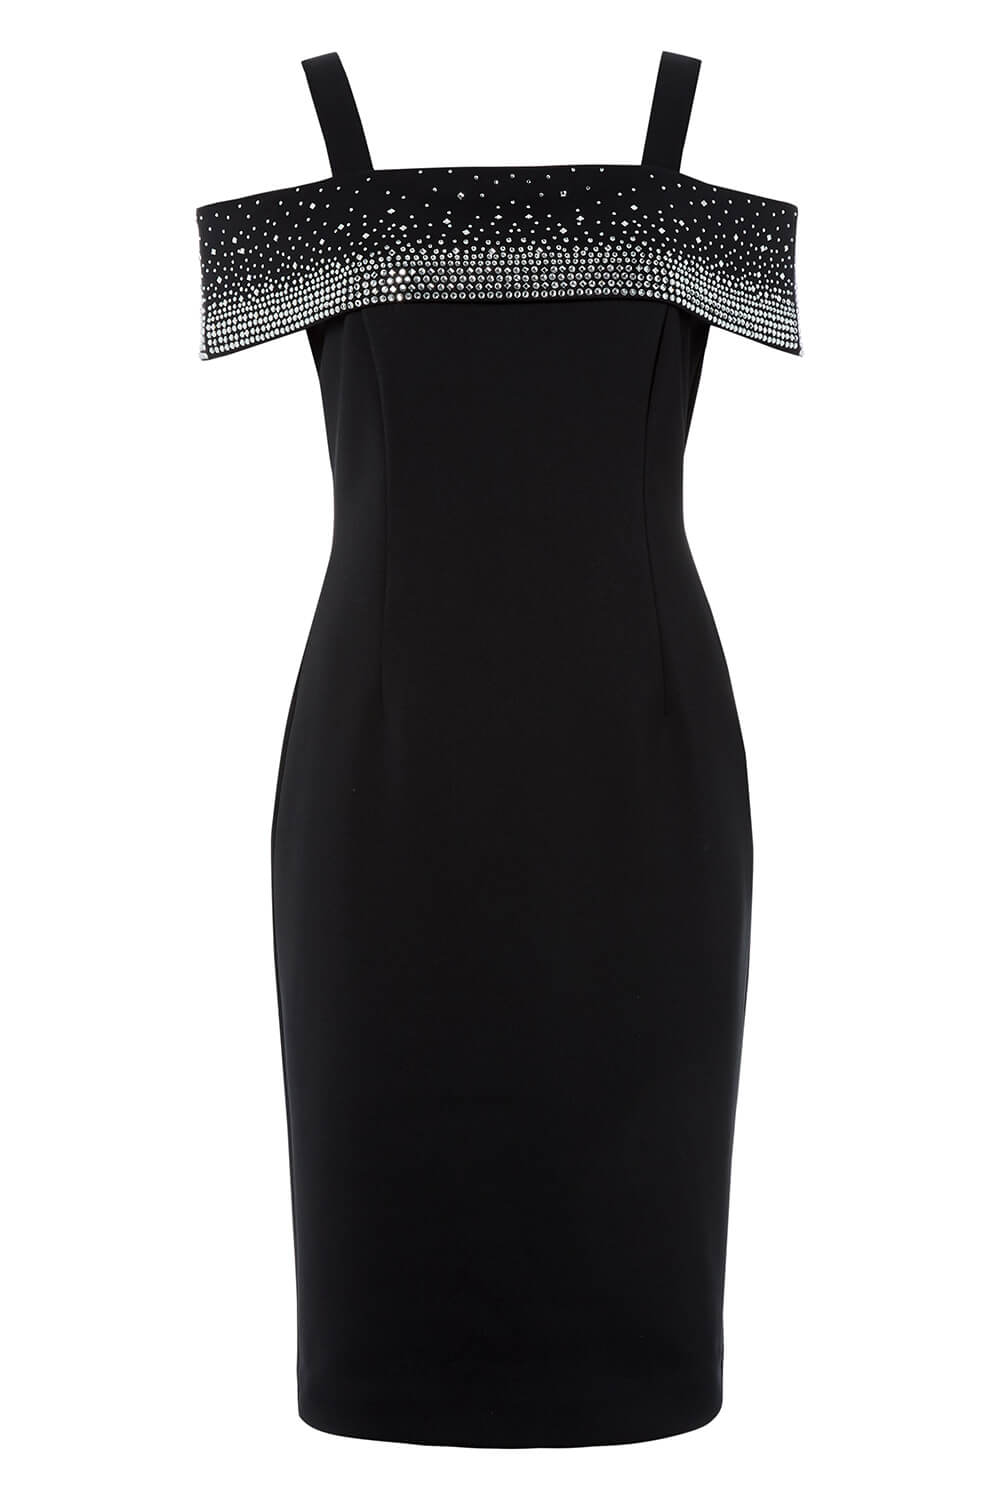 Black Hotfix Cold Shoulder Dress, Image 4 of 4